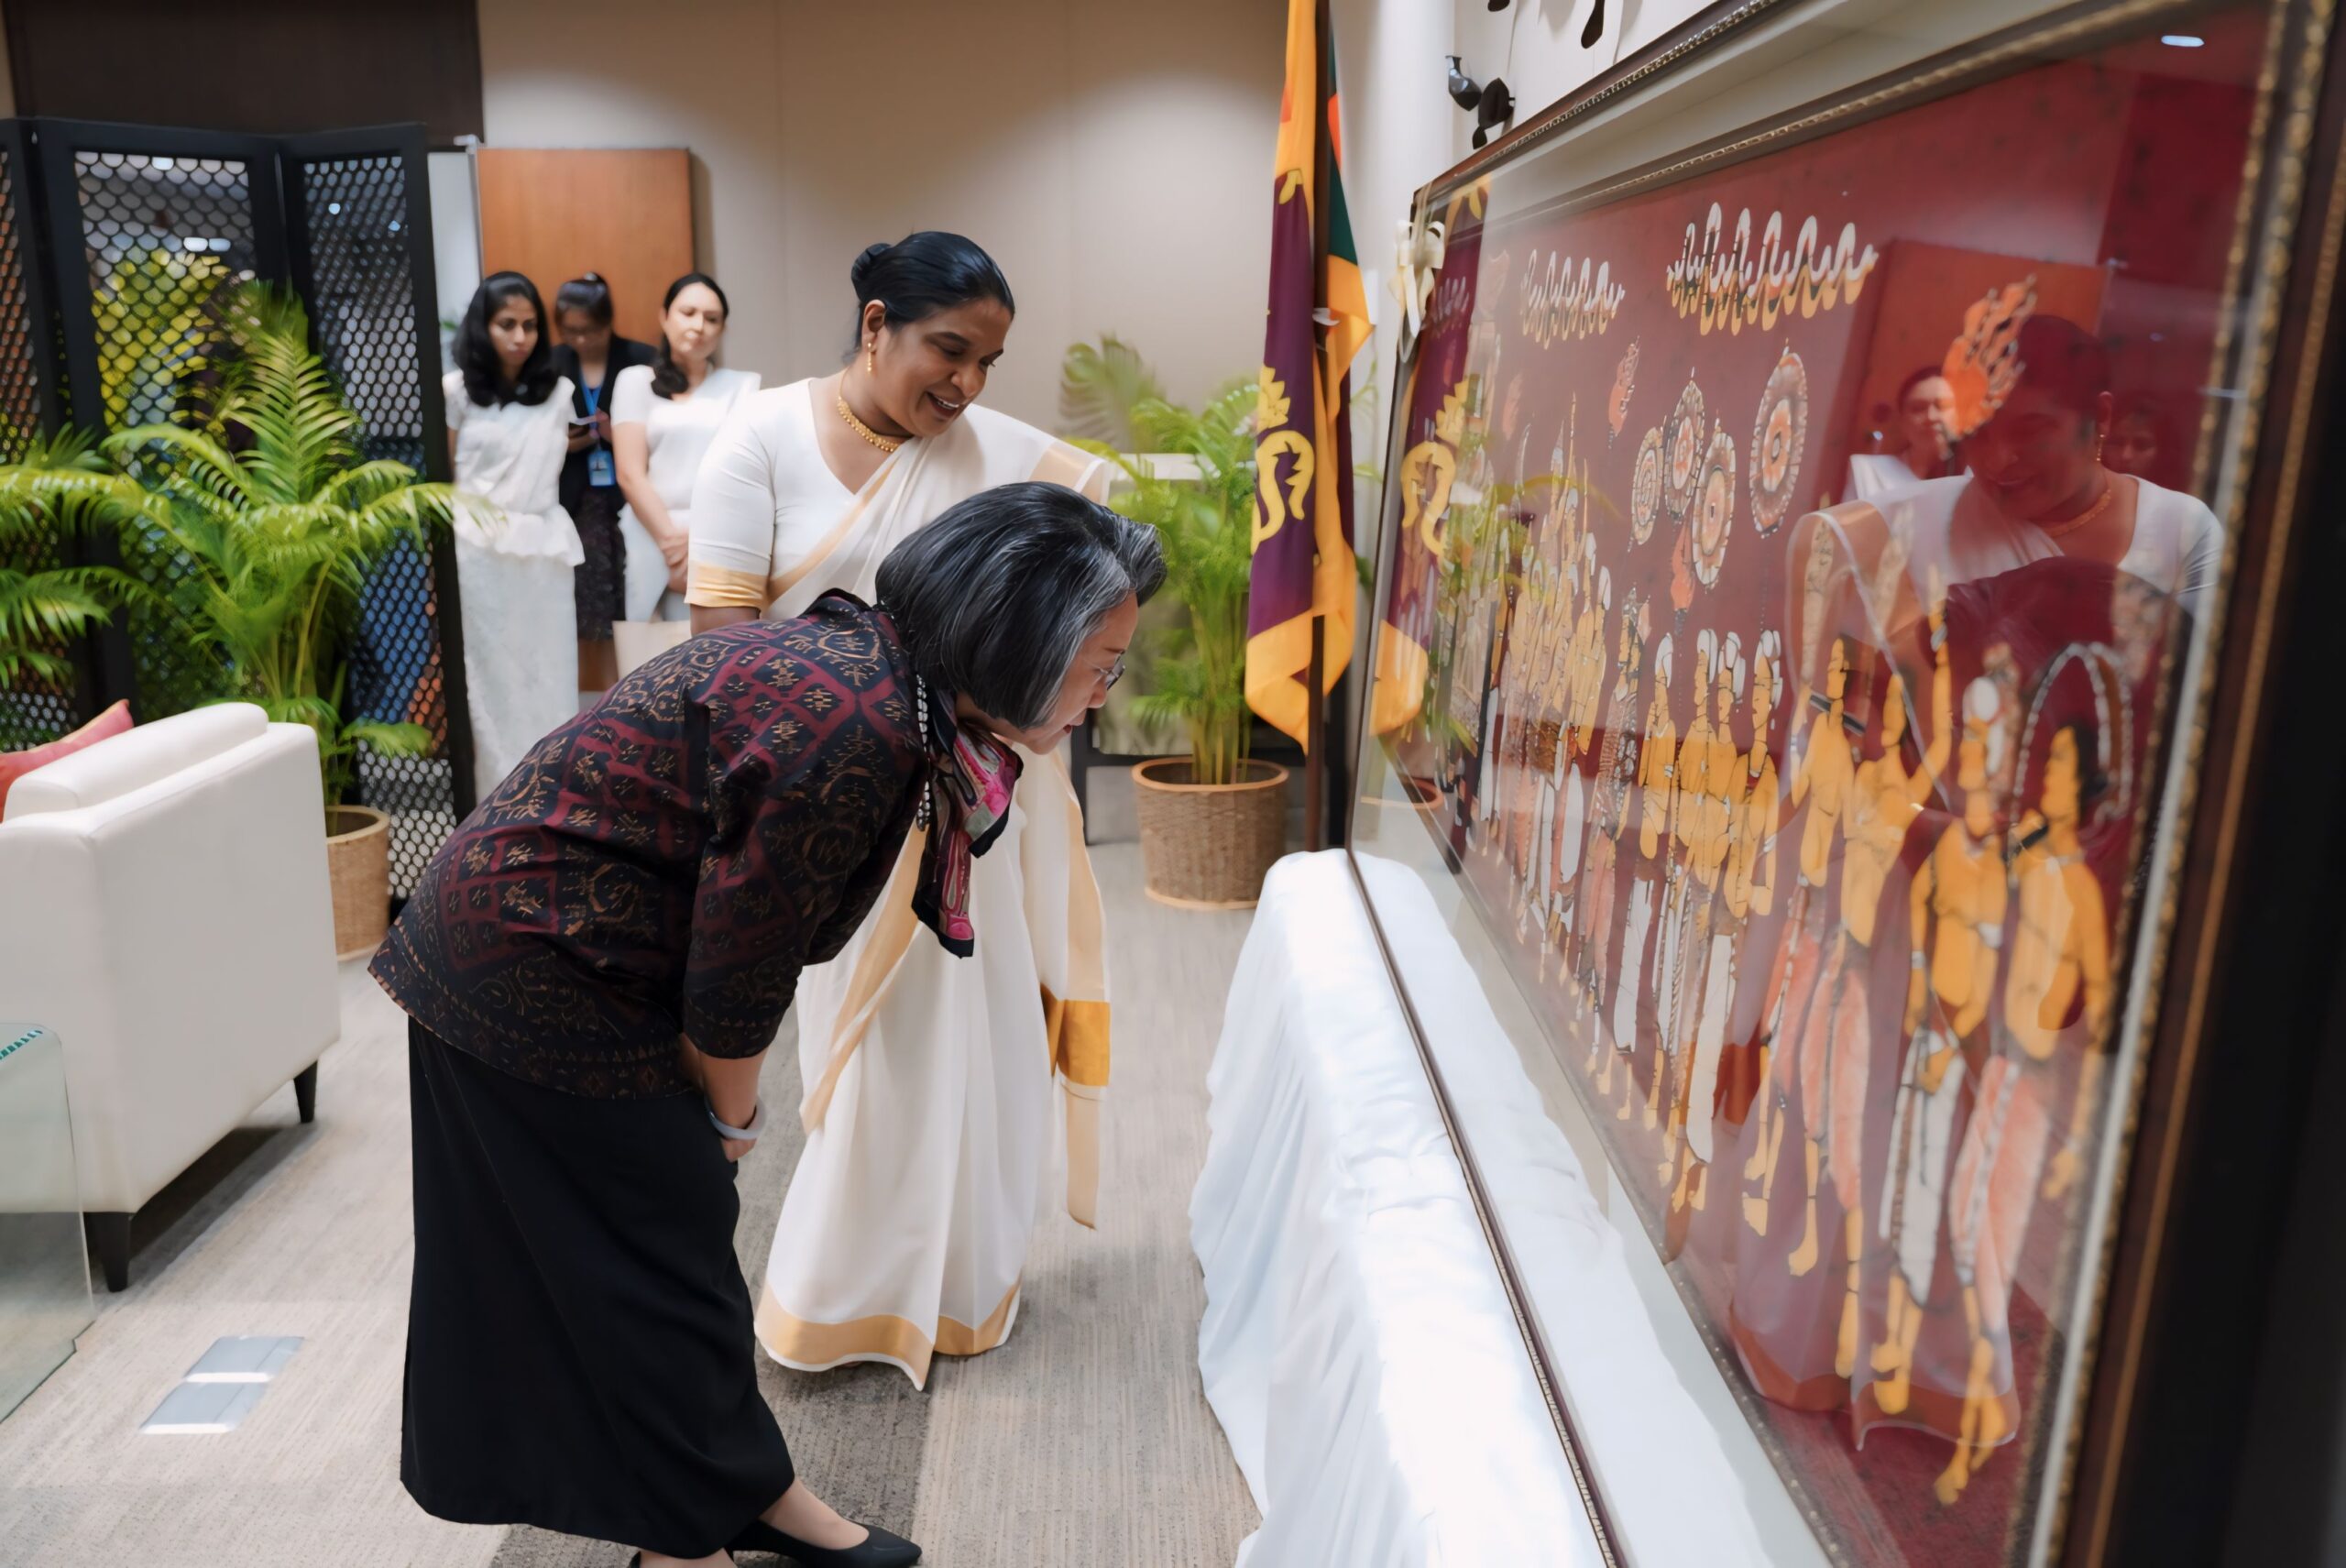 Sri Lanka Embassy in Bangkok joins the “57th Diplomatic Red Cross Bazaar” inaugurated by Her Royal Highness Princess Maha Chakri Sirindhorn